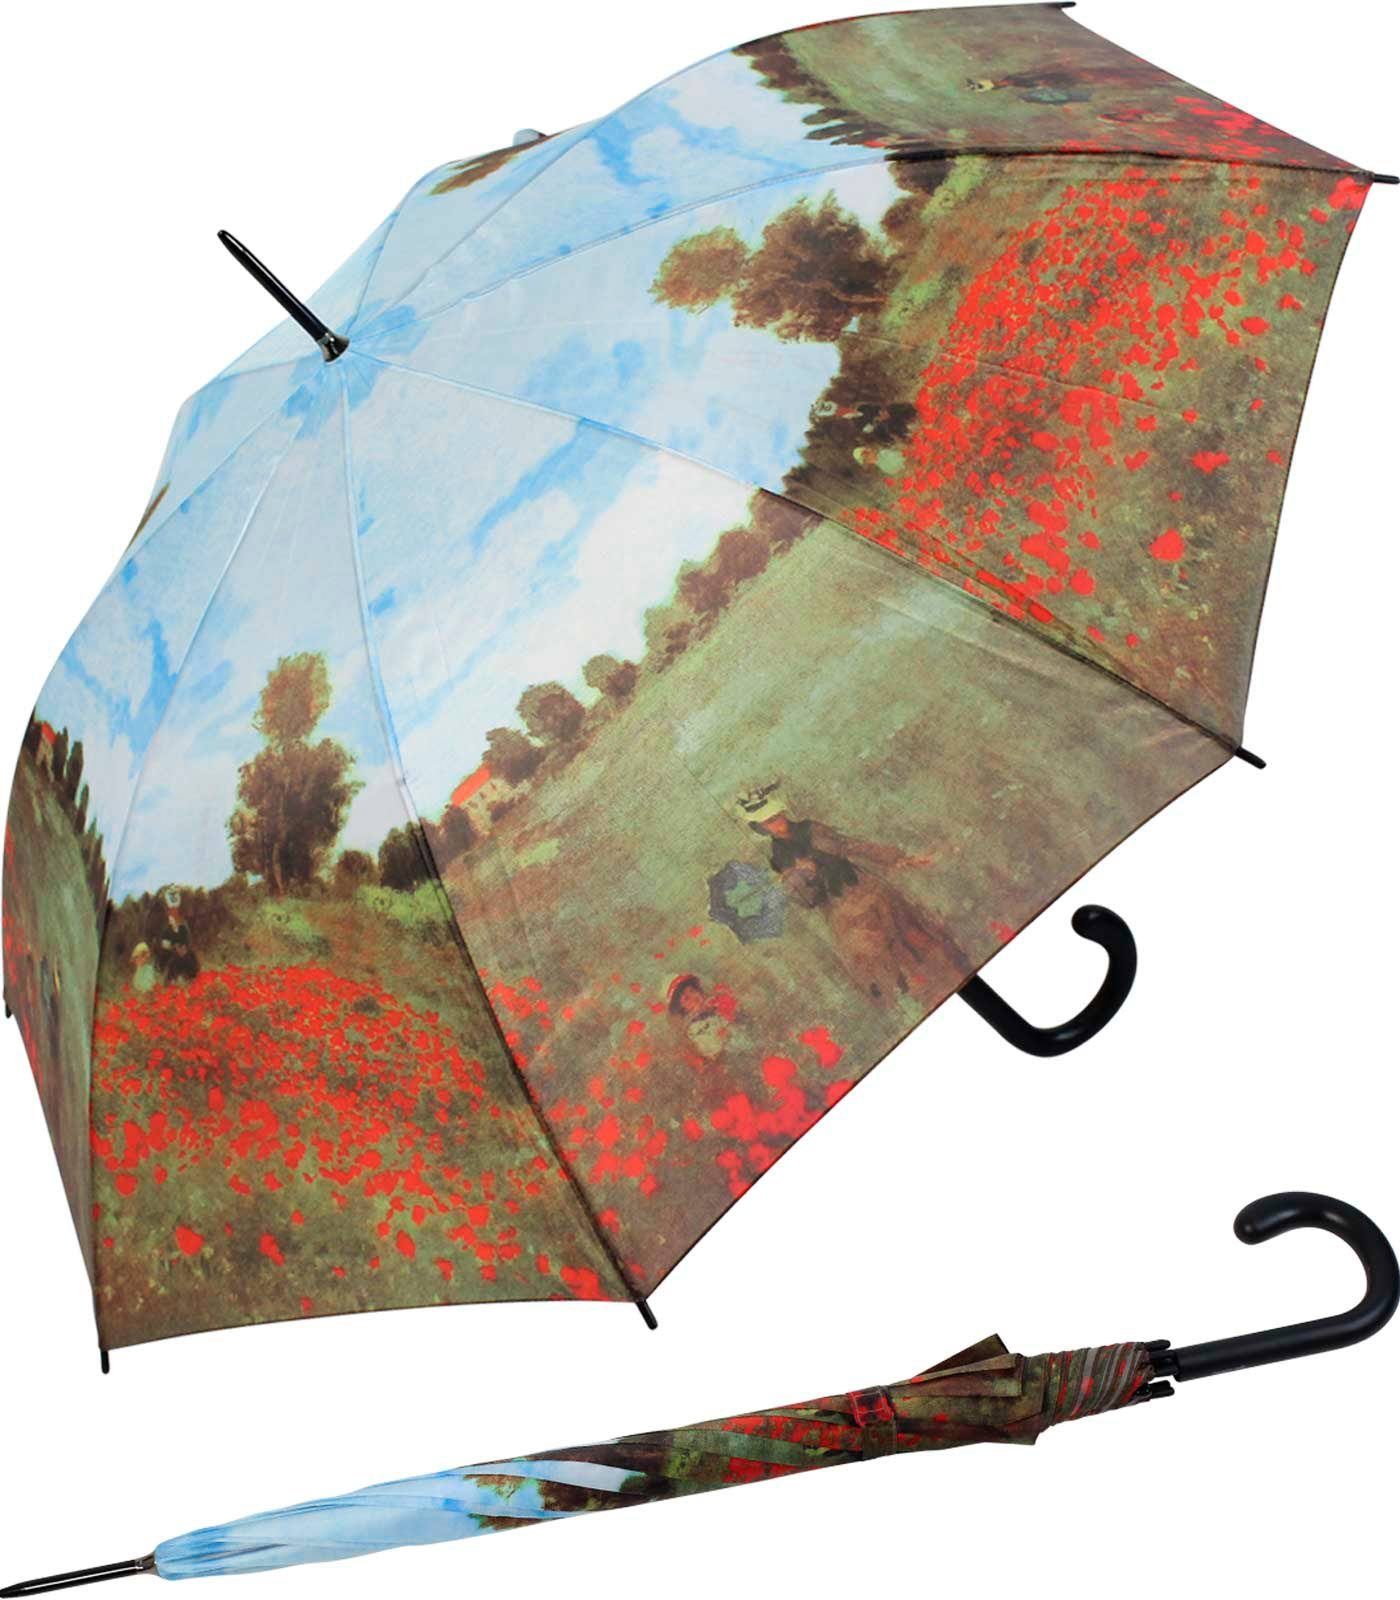 HAPPY RAIN Langregenschirm großer Regenschirm mit Künstlermotiv für Damen, Motiv Monet Mohnblumenfeld